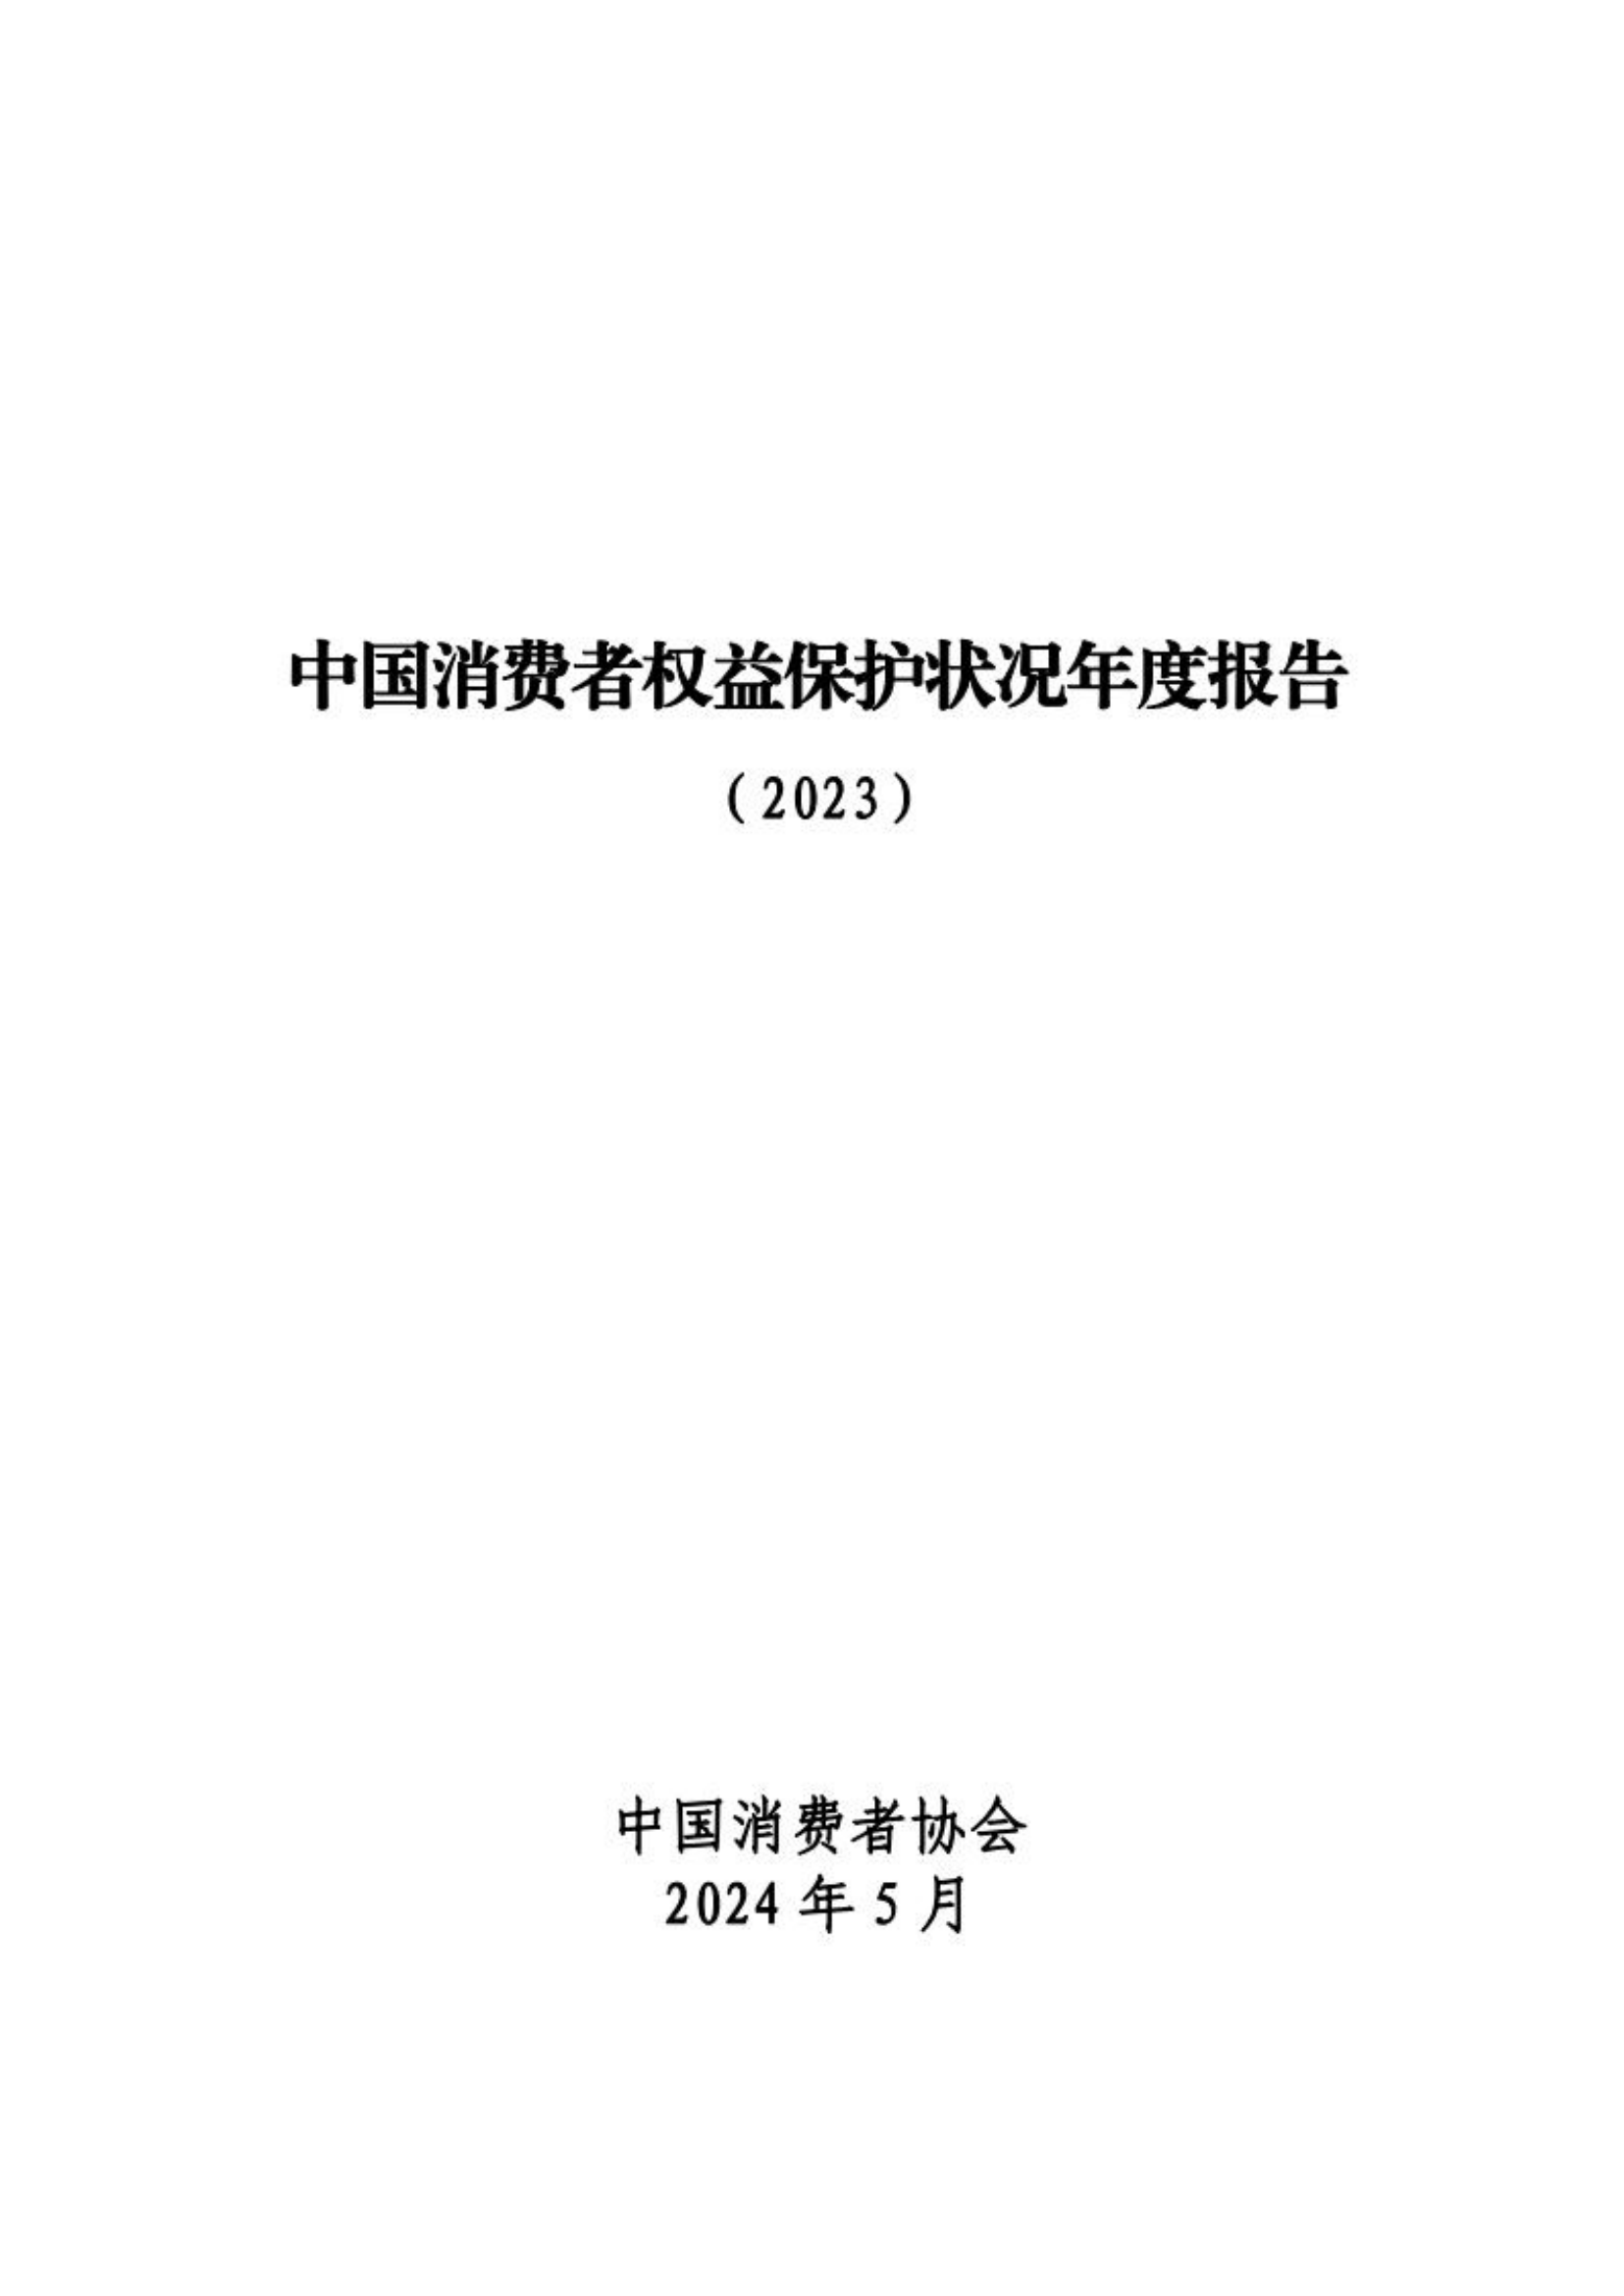 中国消费者权益保护状况年度报告2023-中消协-202405.pdf